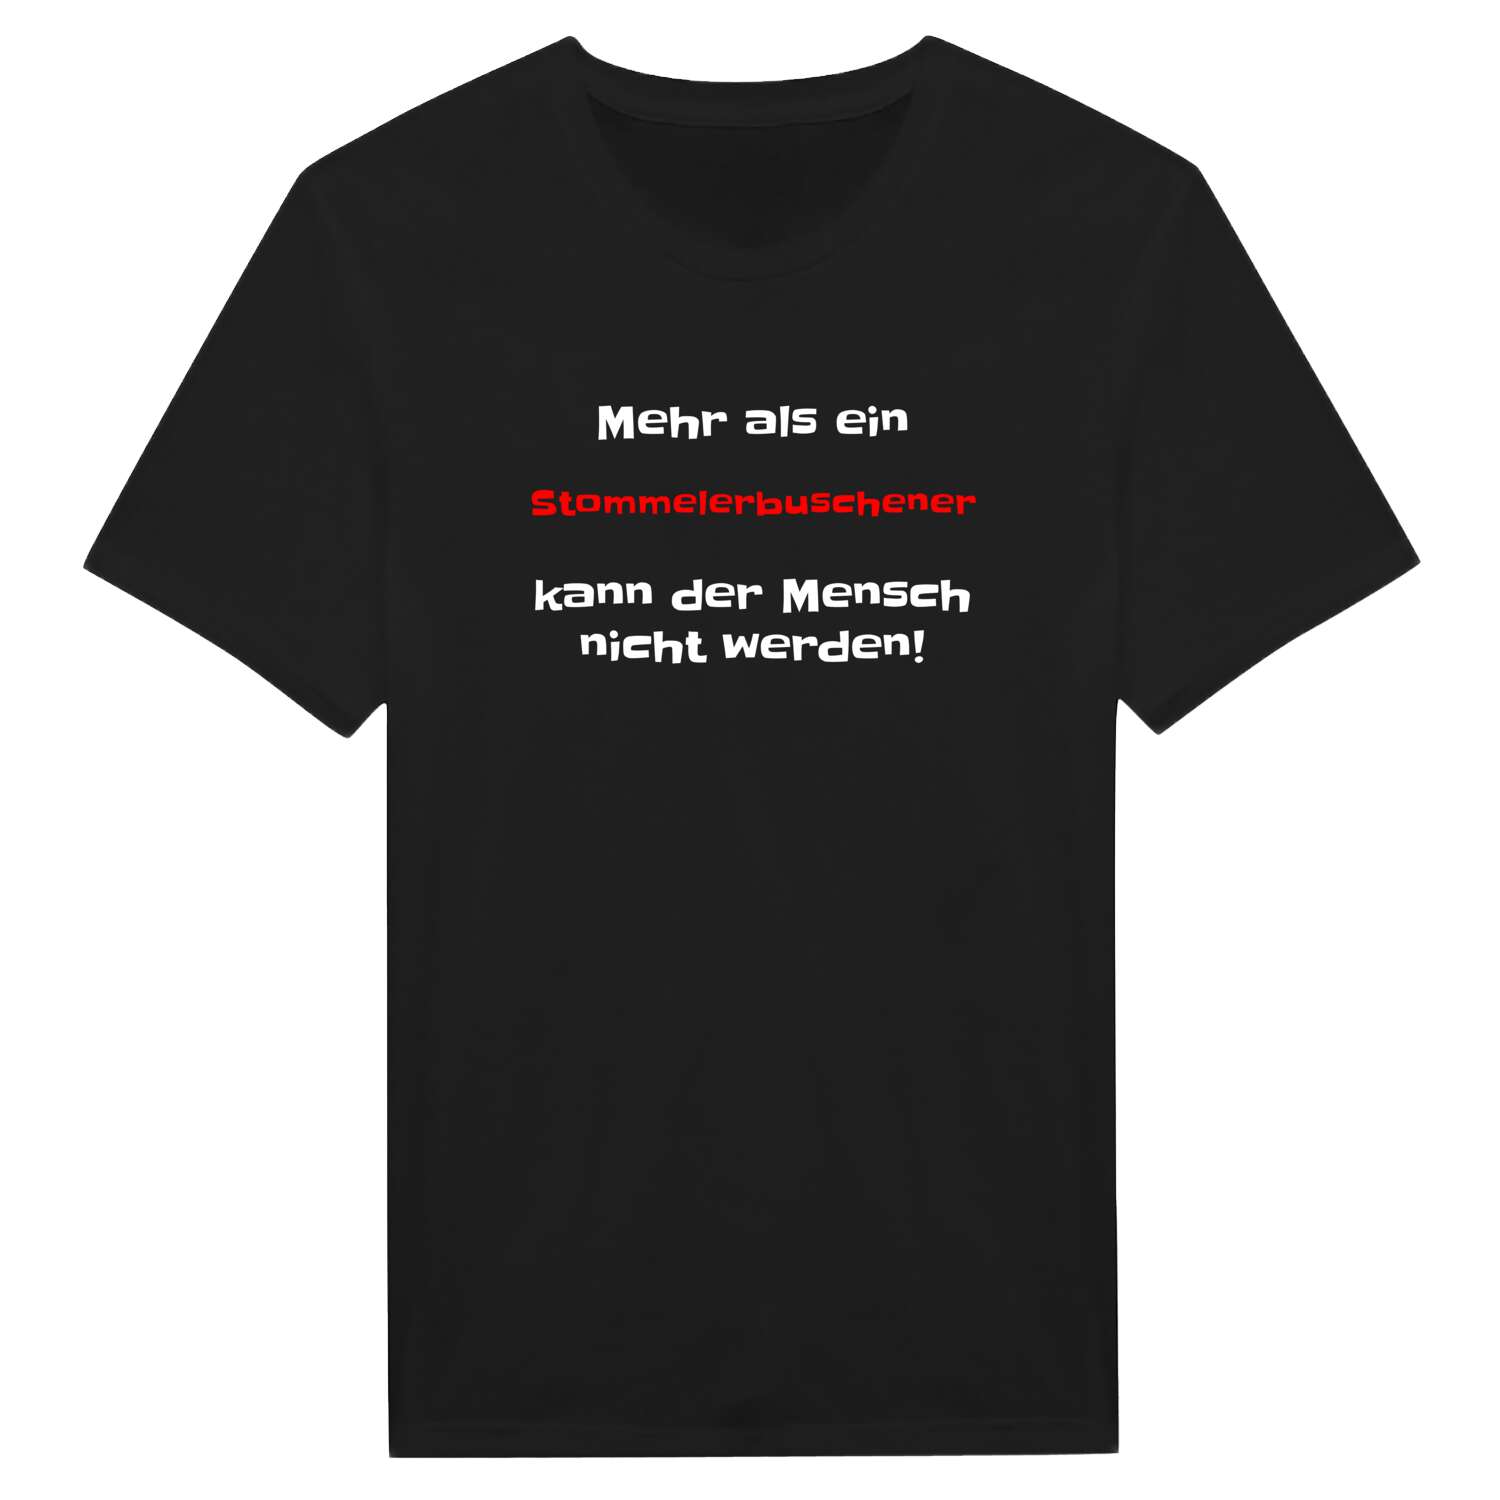 Stommelerbusch T-Shirt »Mehr als ein«